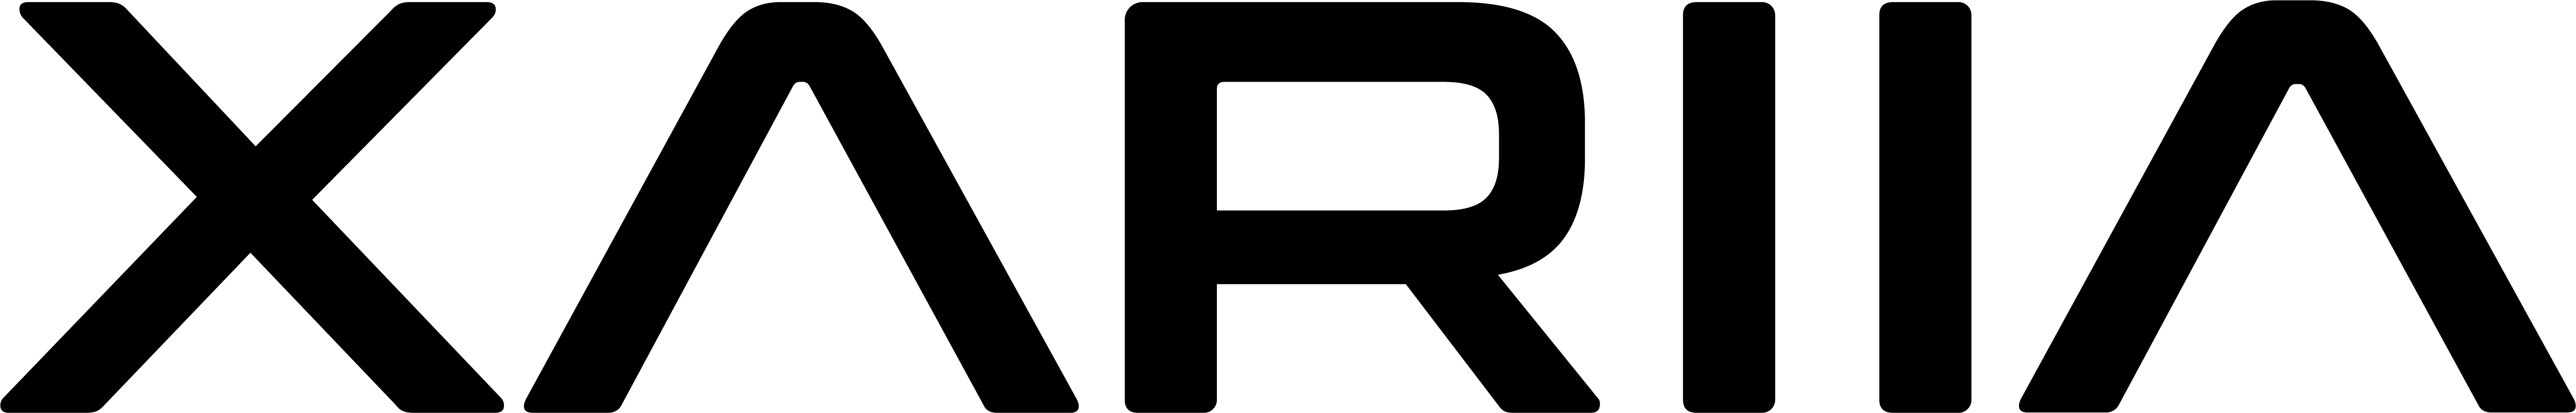 XARIIA logo